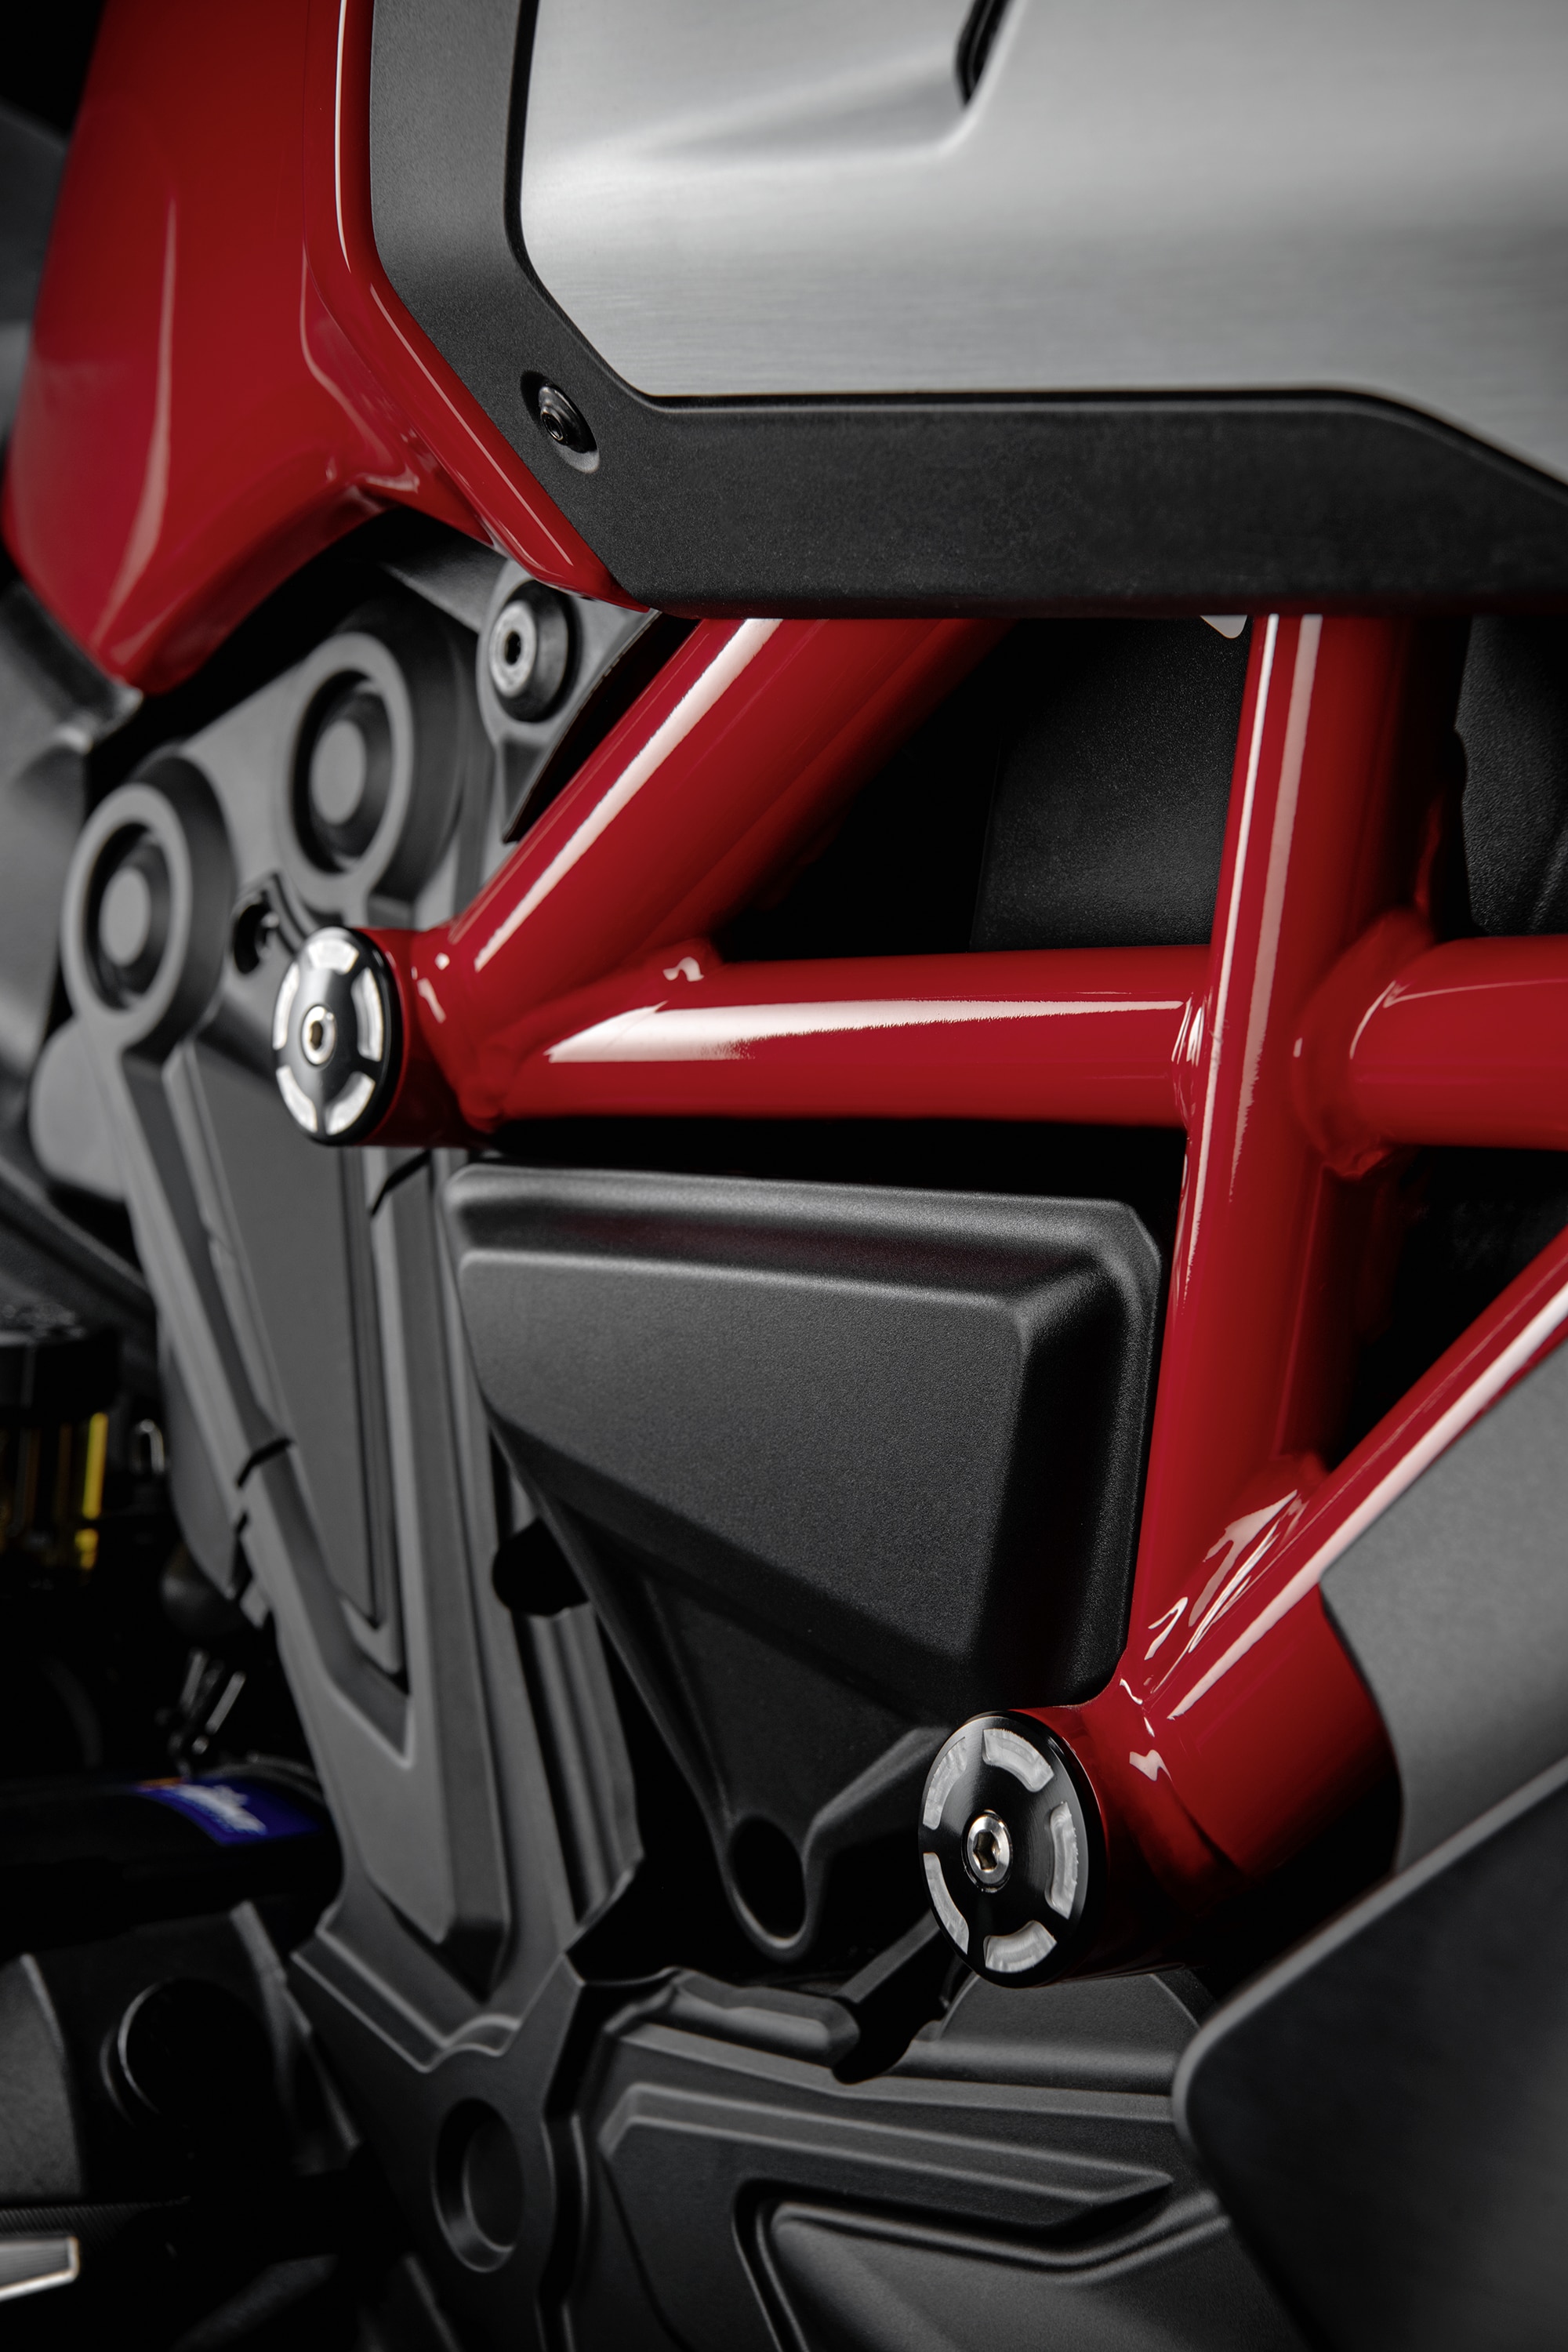 Ducati Billet aluminium frame plugs